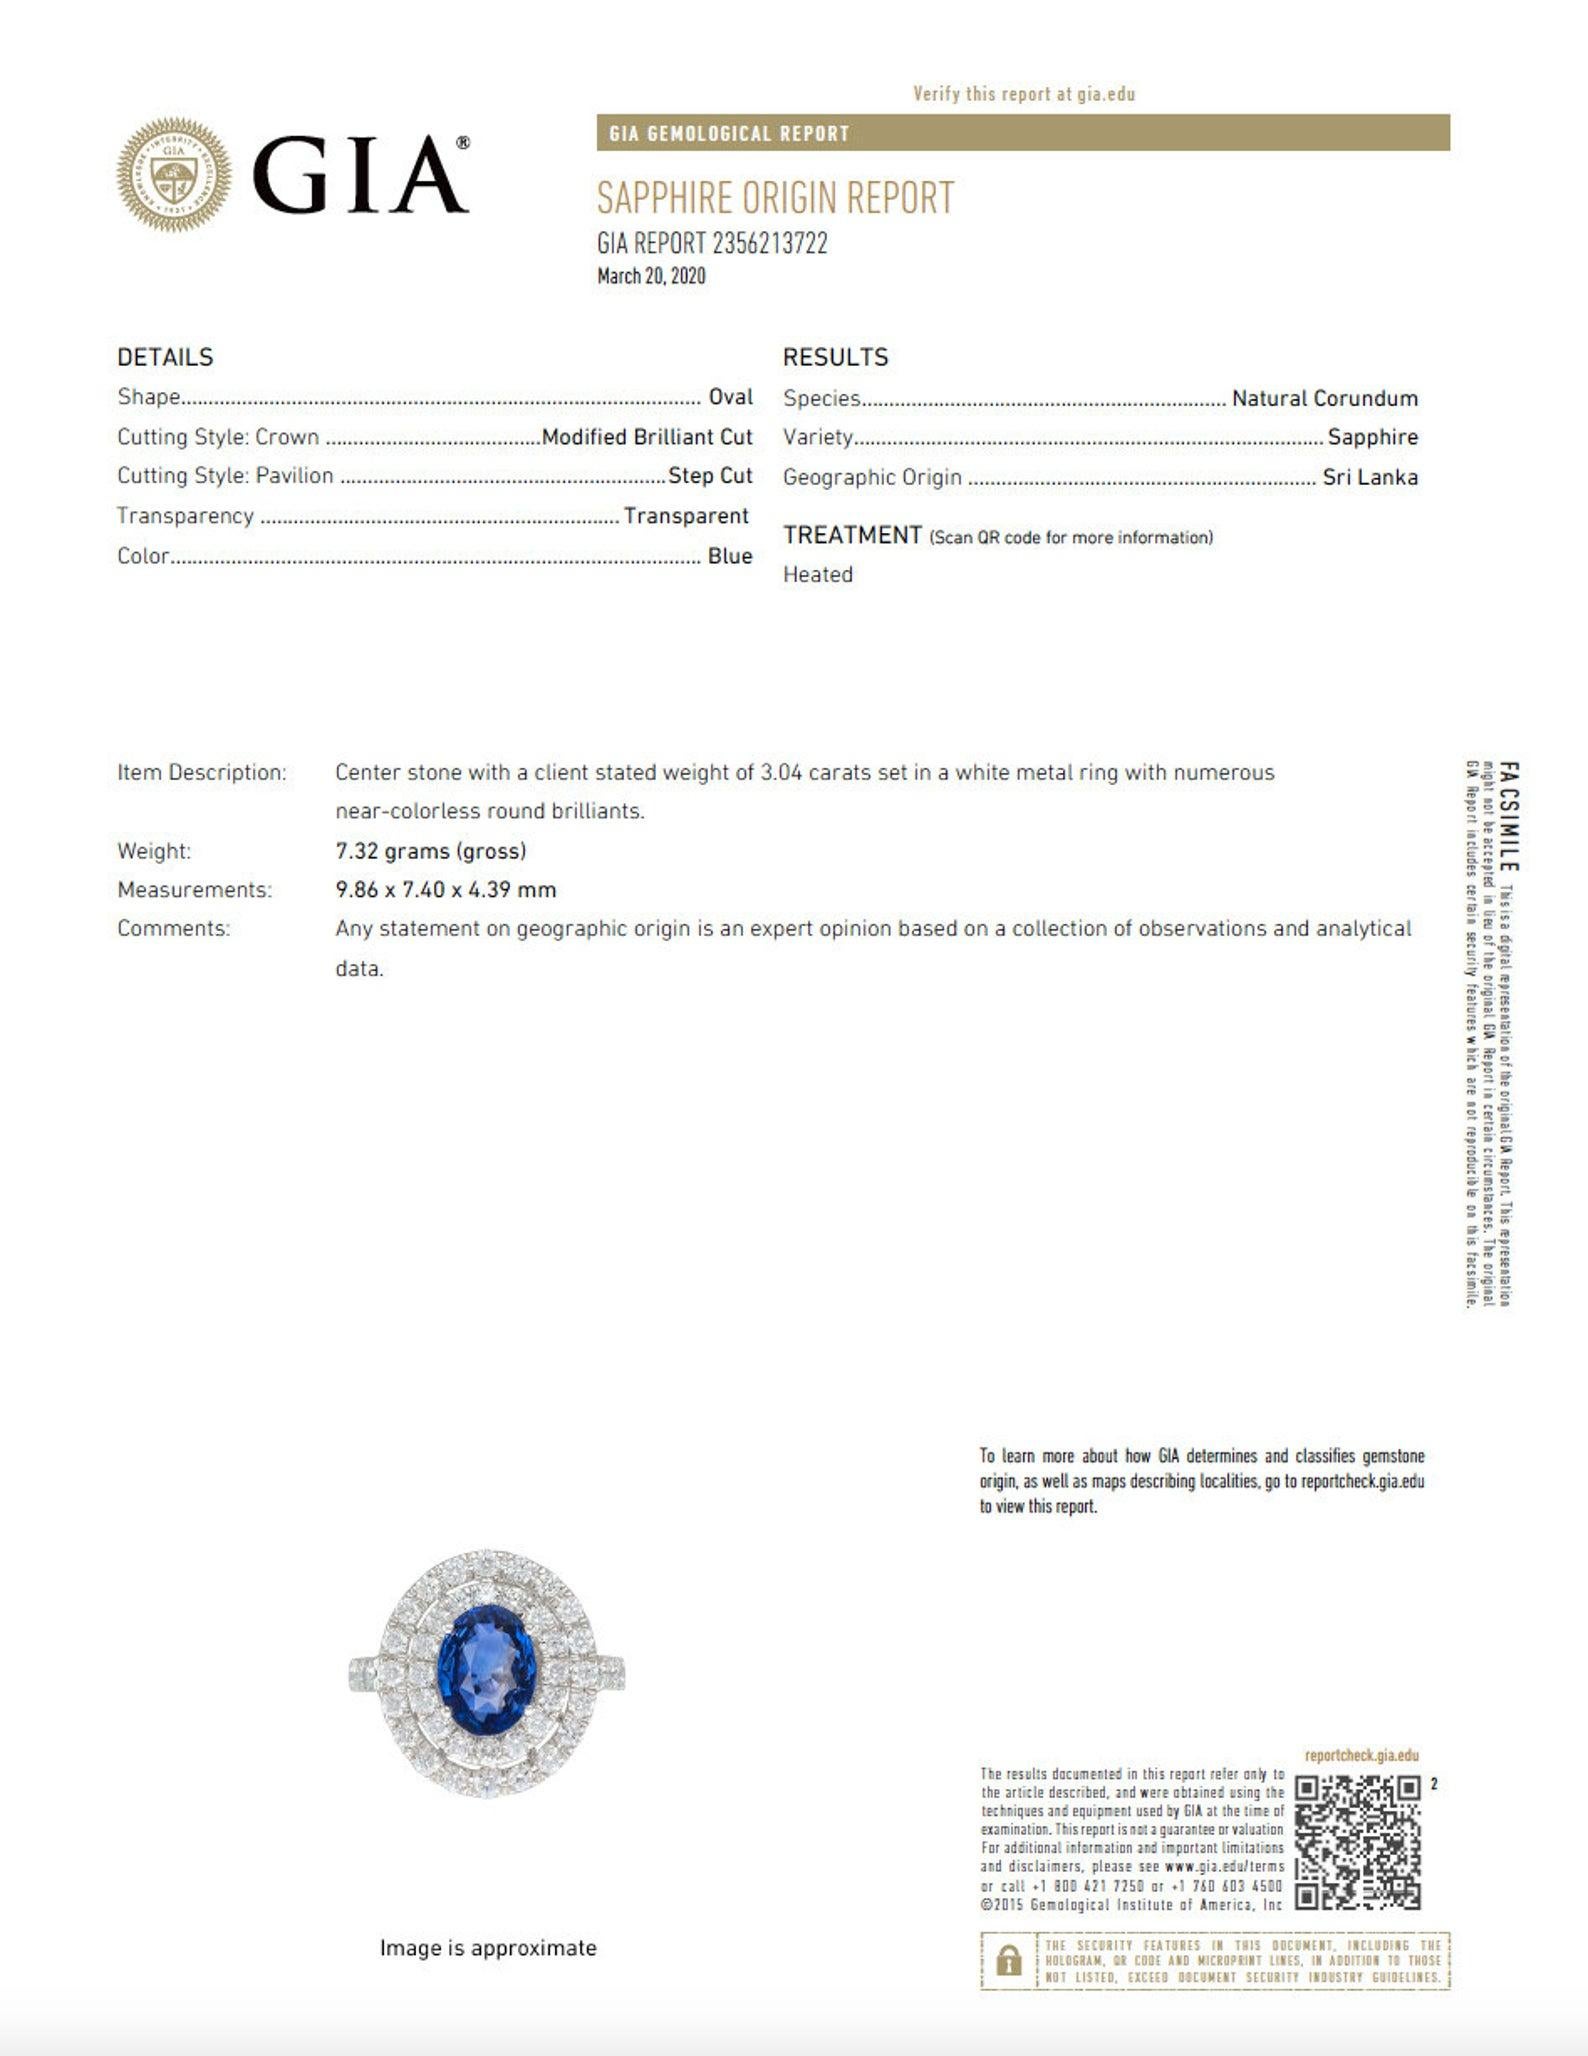 Spécifications du produit :
Saphir bleu de taille ovale de haute qualité de 3,04 carats (9,86 x 7,40 x 4,39 mm)
Couleur : Bleu royal du Sri Lanka
Le certificat GIA n° 2356213722 est inclus
- 46 diamants naturels de qualité supérieure de taille ronde